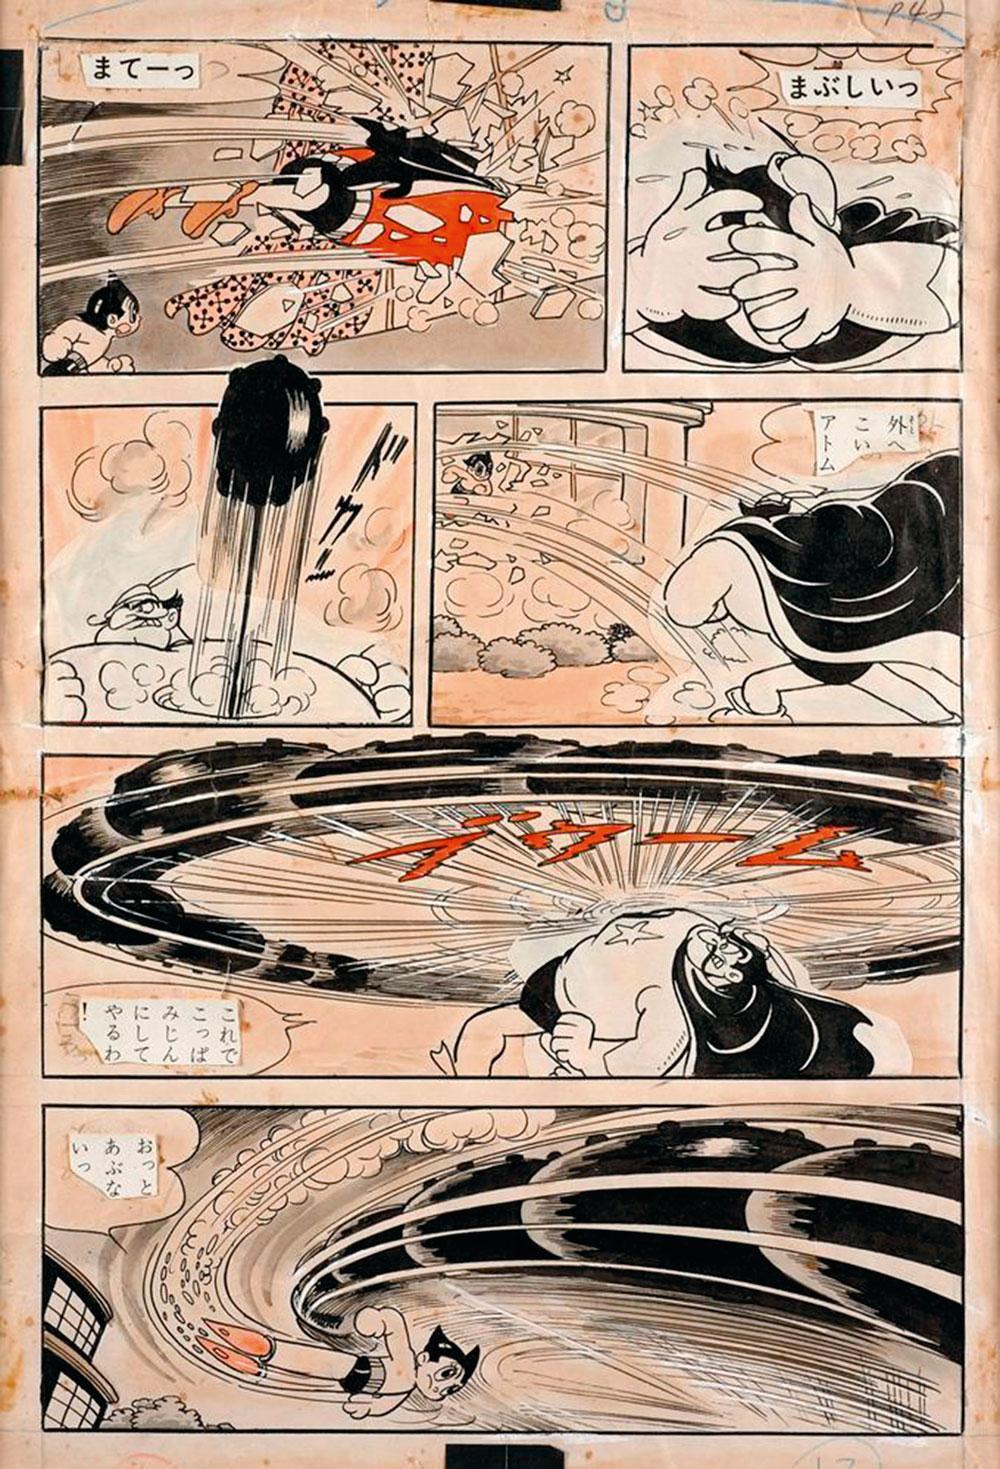 La planche d'Astro Boy, par Osamu Tezuka, vendue à 269.400 euros, n'en finit pas de faire des remous.